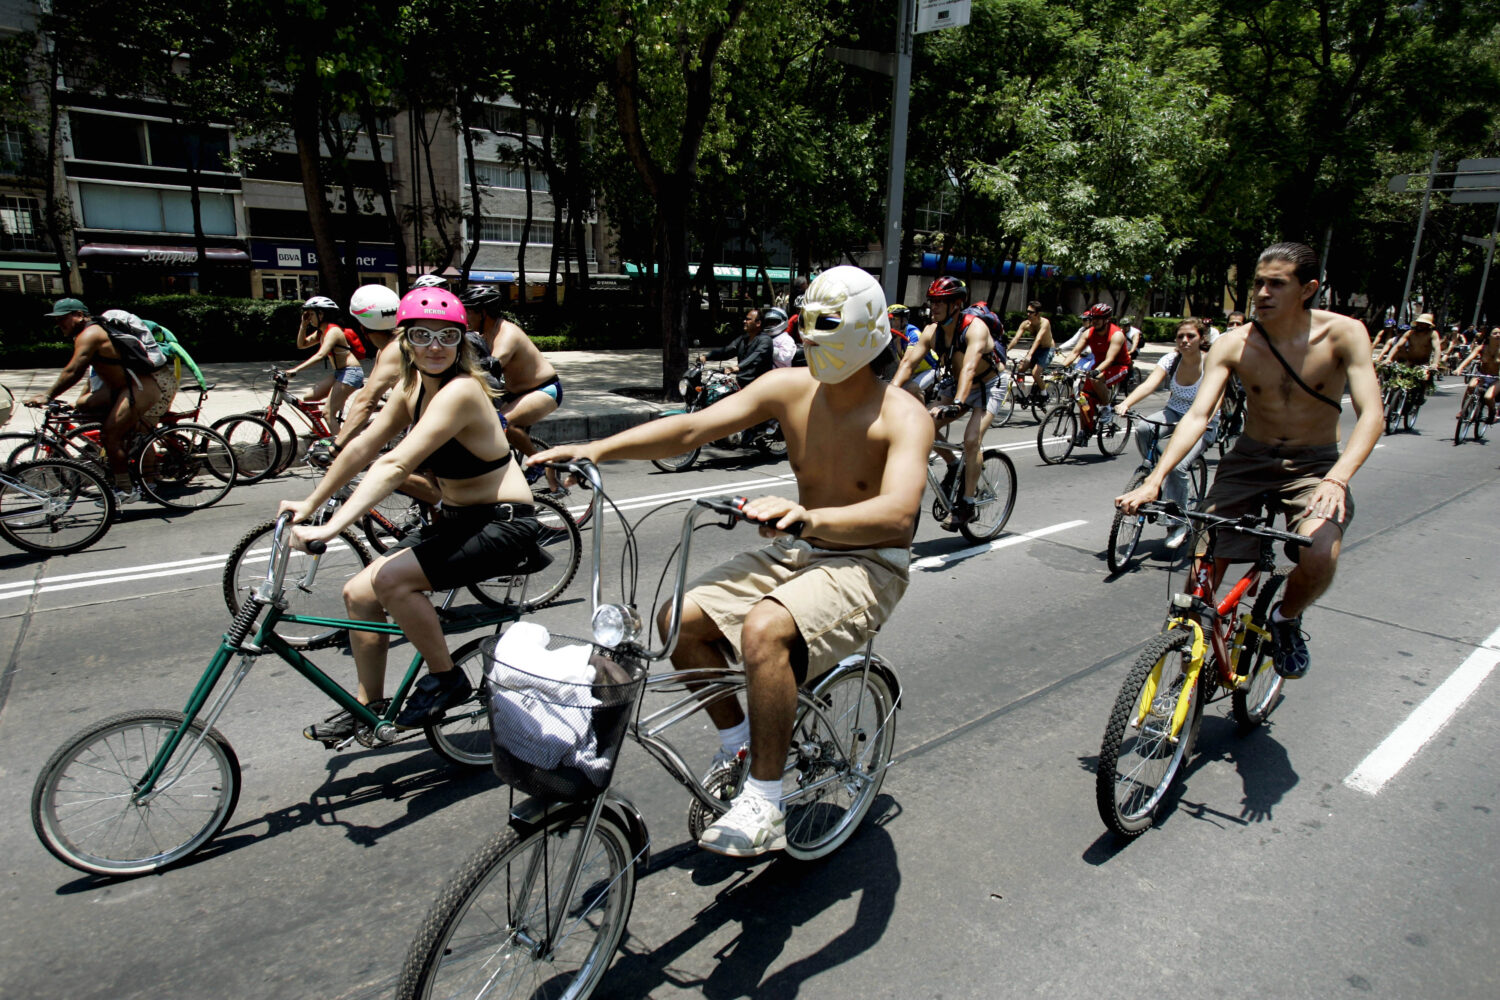 women riding bikes naked